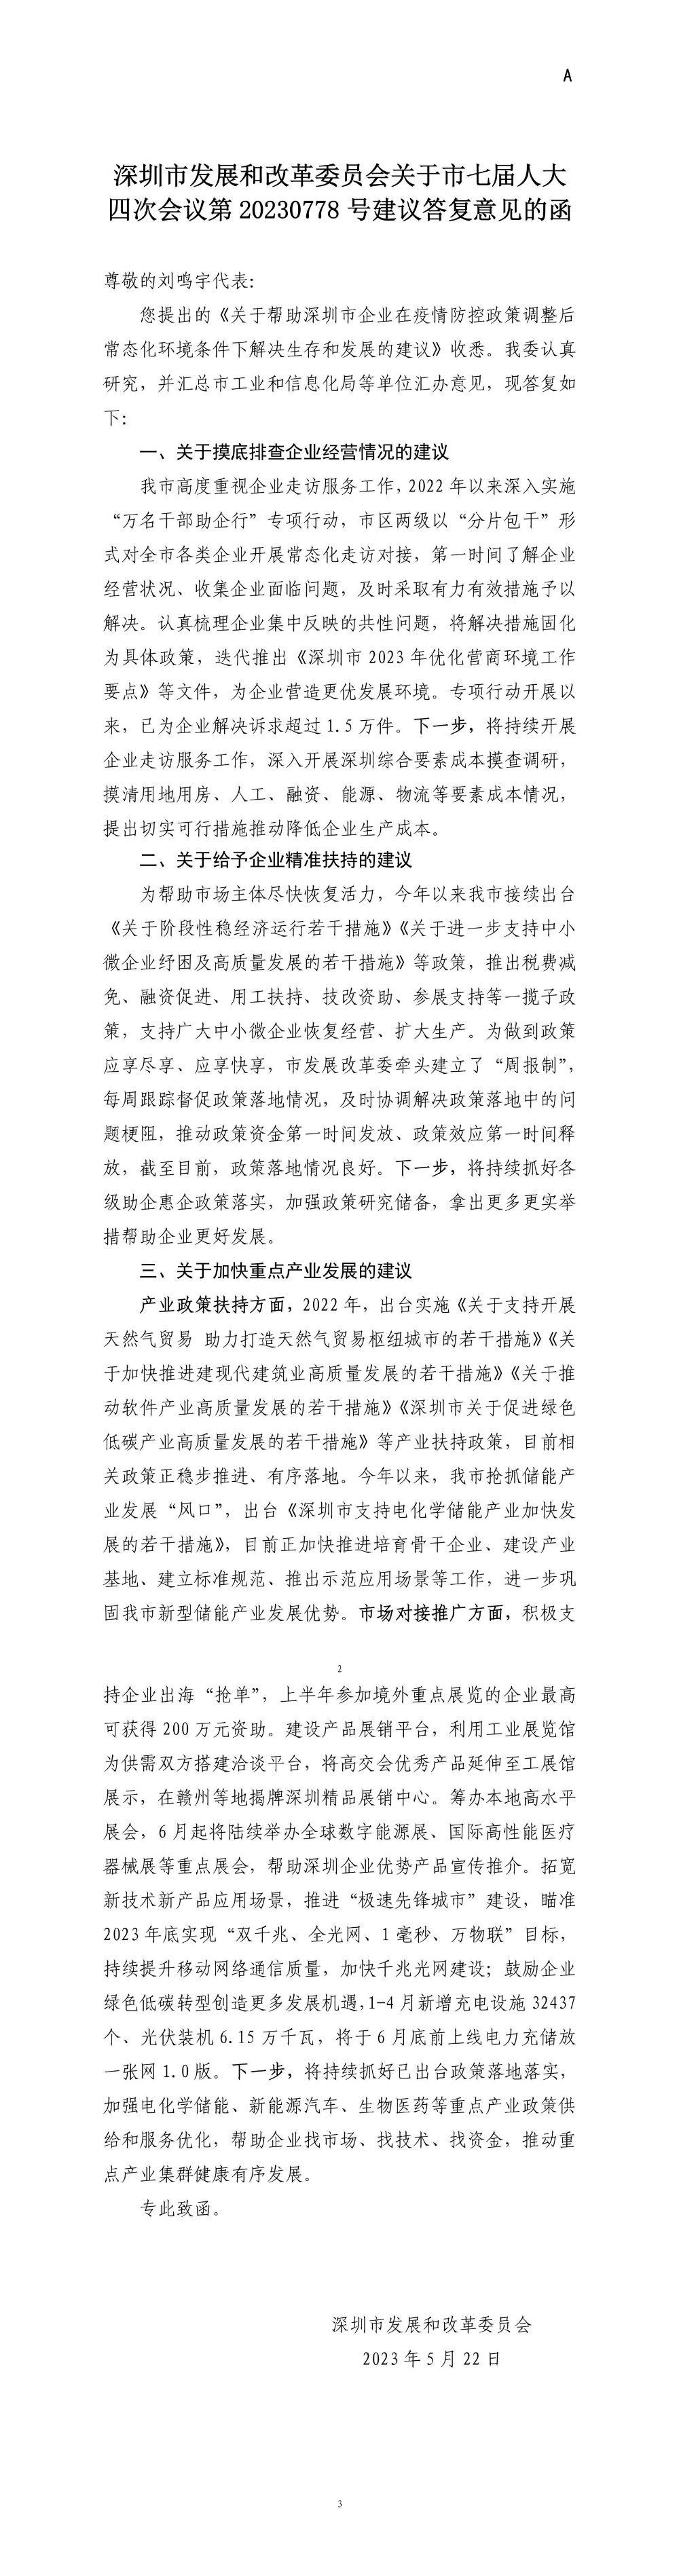 深圳市发展和改革委员会关于市七届人大四次会议第20230778号建议答复意见的函.jpg